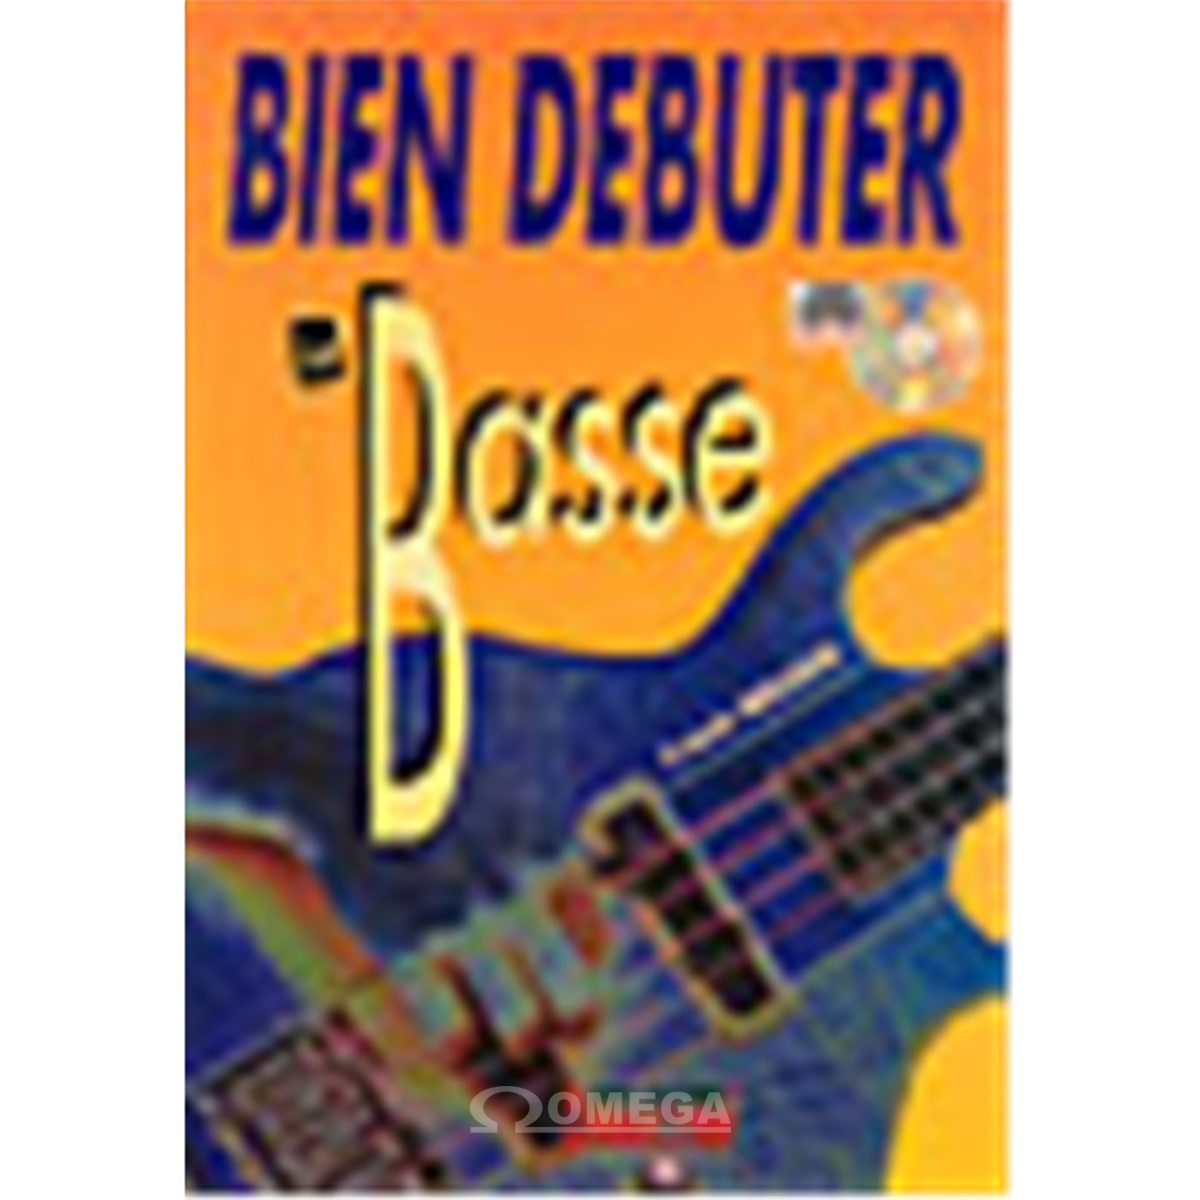 BIEN DEBUTER La Basse + CD   MF1105